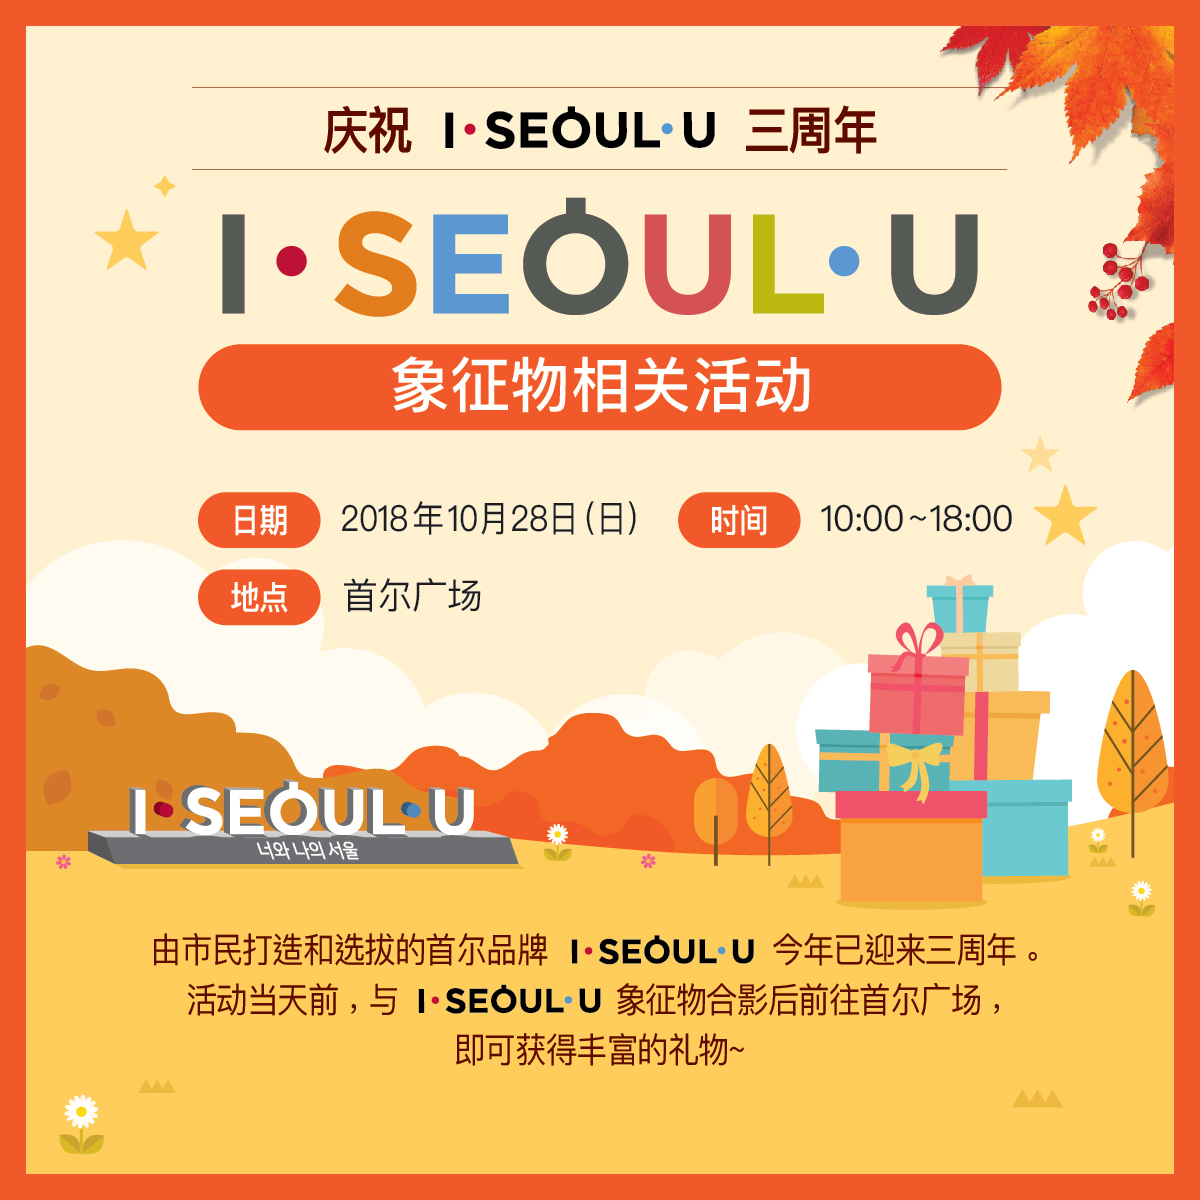 庆祝 I·SEOUL·U 三周年
象征物相关活动
日期：2018年10月28日（日）
时间：10:00~18:00
地点：首尔广场
你和我的首尔
由市民打造和选拔的首尔品牌 I·SEOUL·U 今年已迎来三周年。活动当天前，与 I·SEOUL·U 象征物合影后前往首尔广场，即可获得丰富的礼物~
